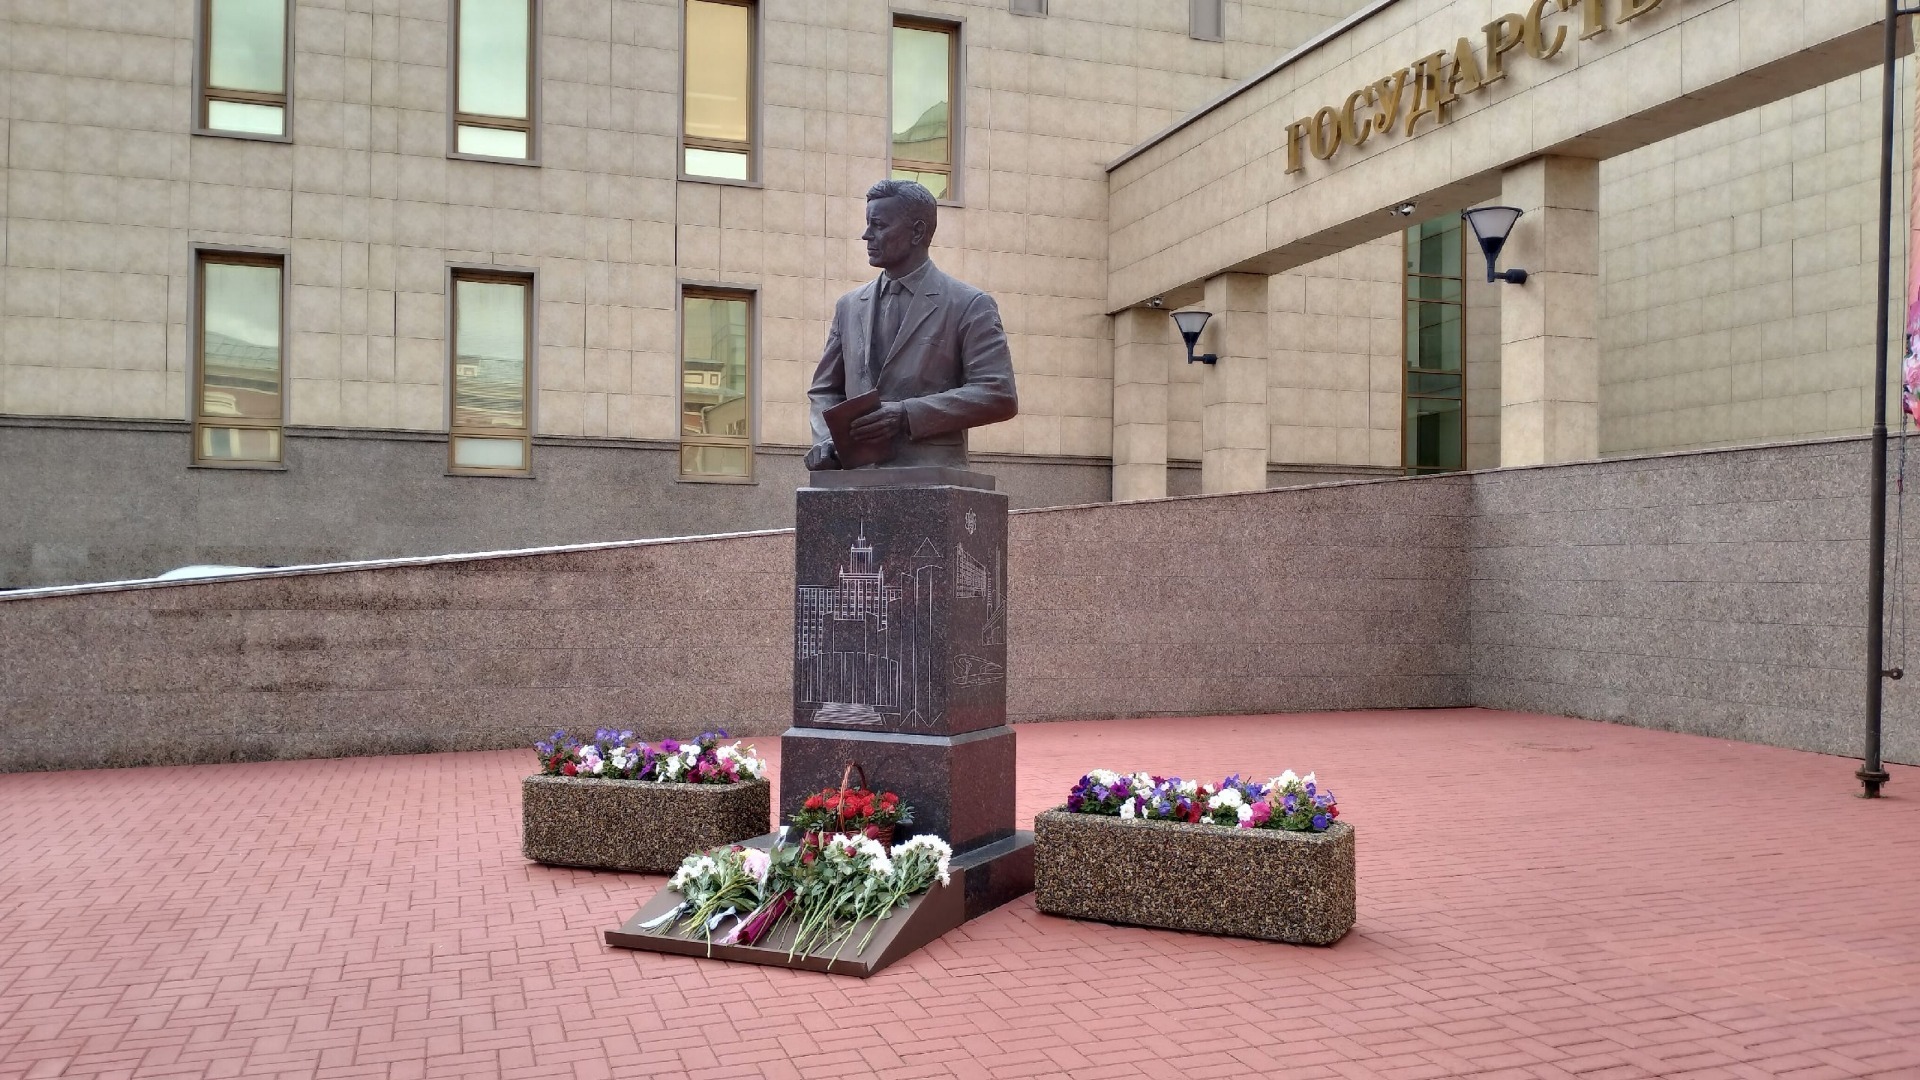 Почему губернатору Сумину поставили памятник в Челябинске?